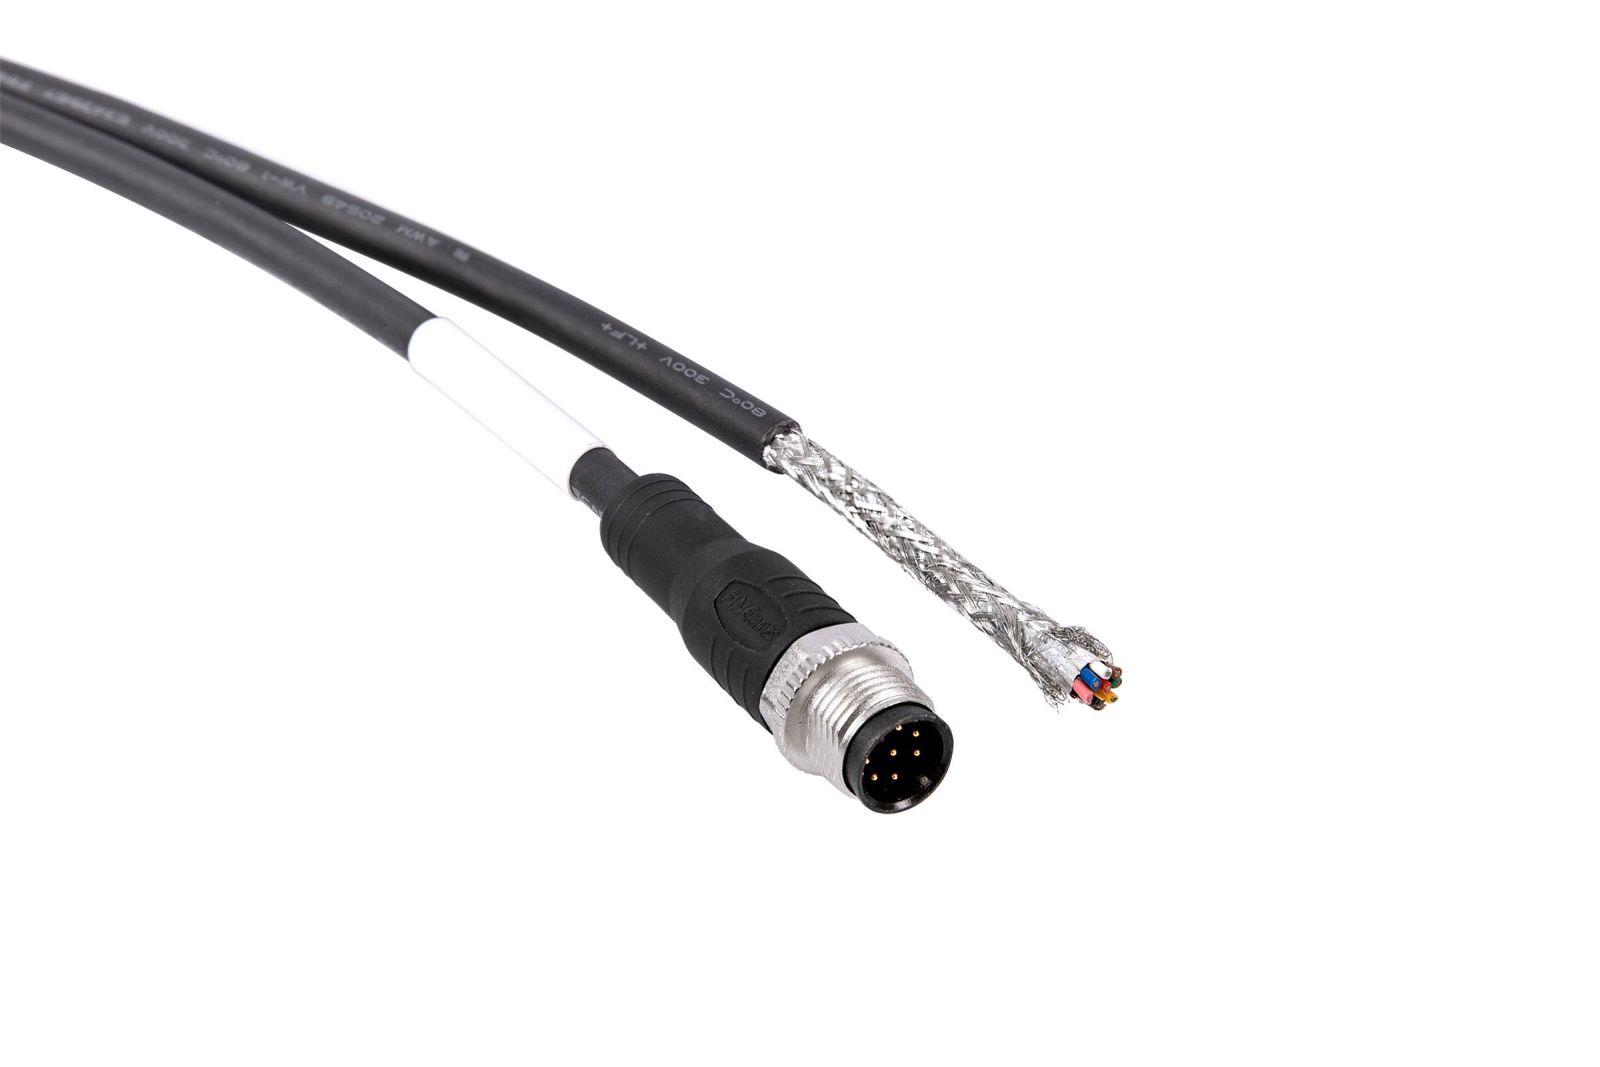 Cáp Power-I/O M12, M, 8P/Open,10 m - I/O / Power Cables cho Camera công nghiệp